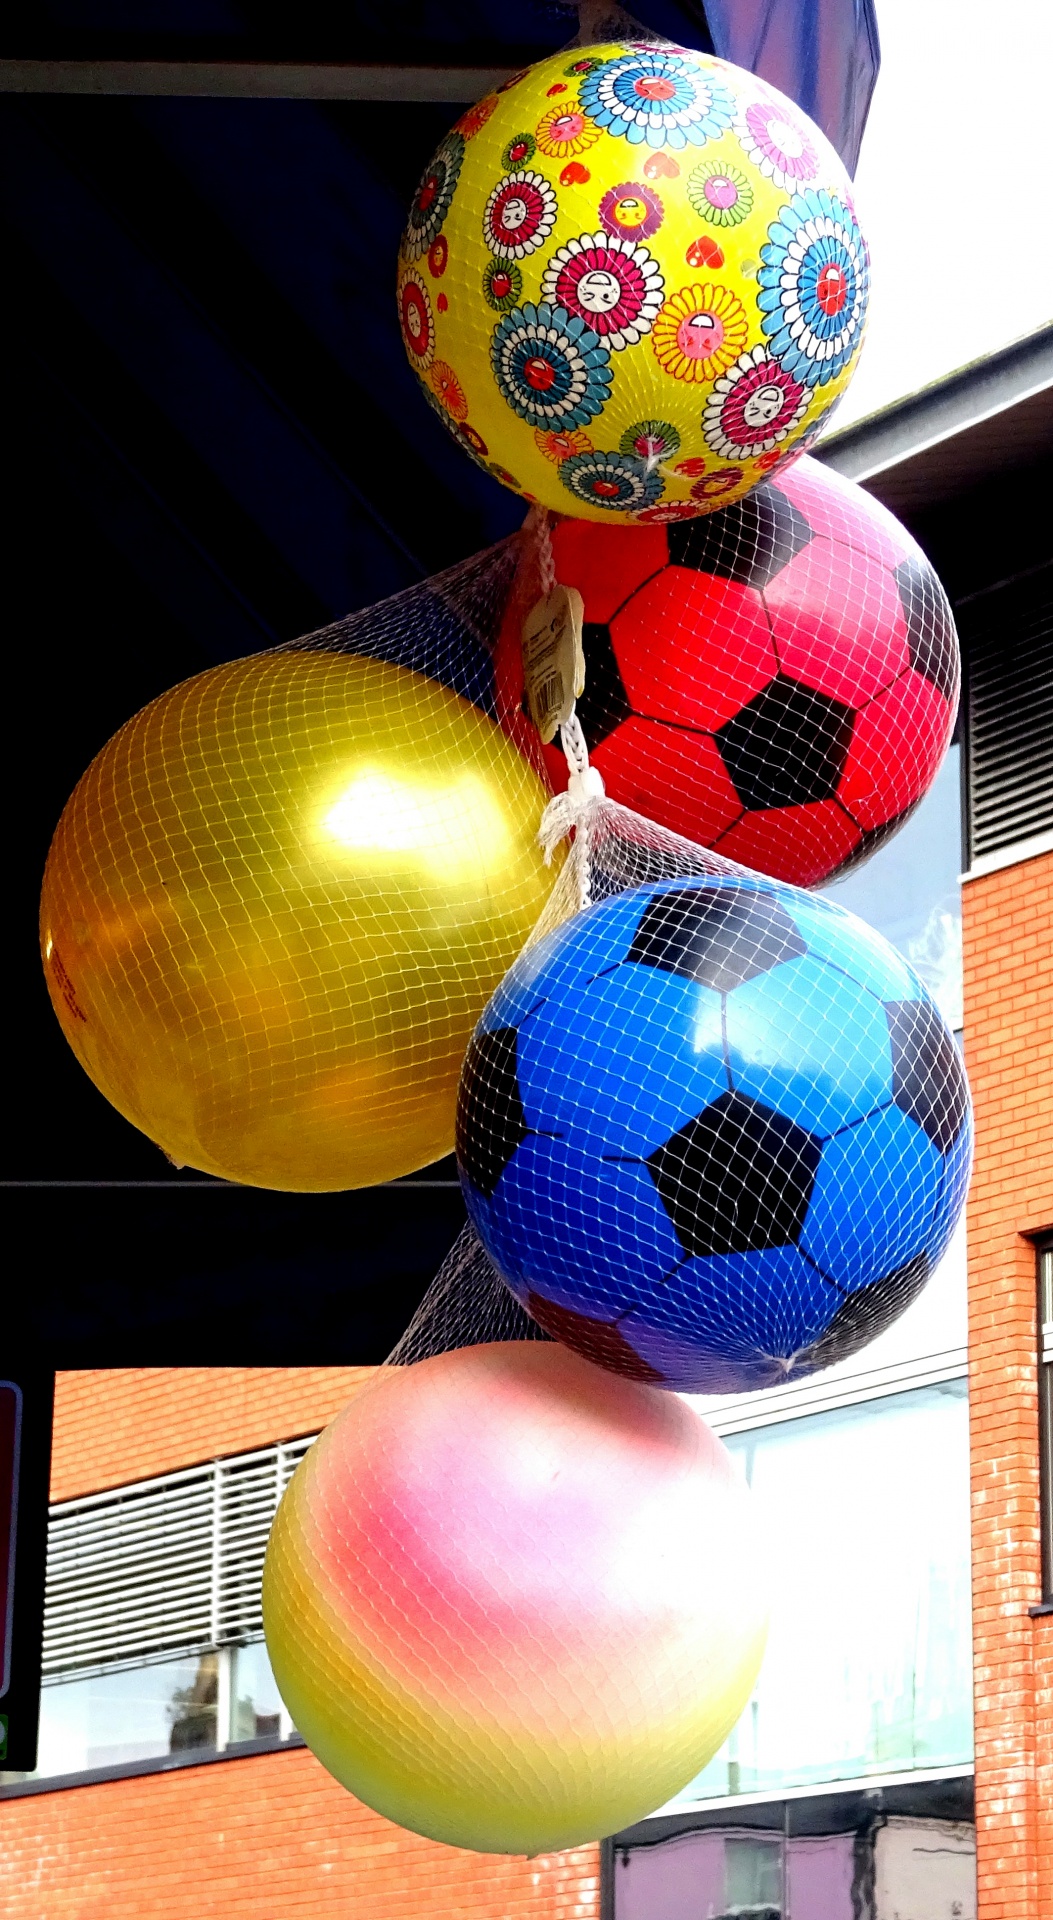 Palloni da calcio colorati